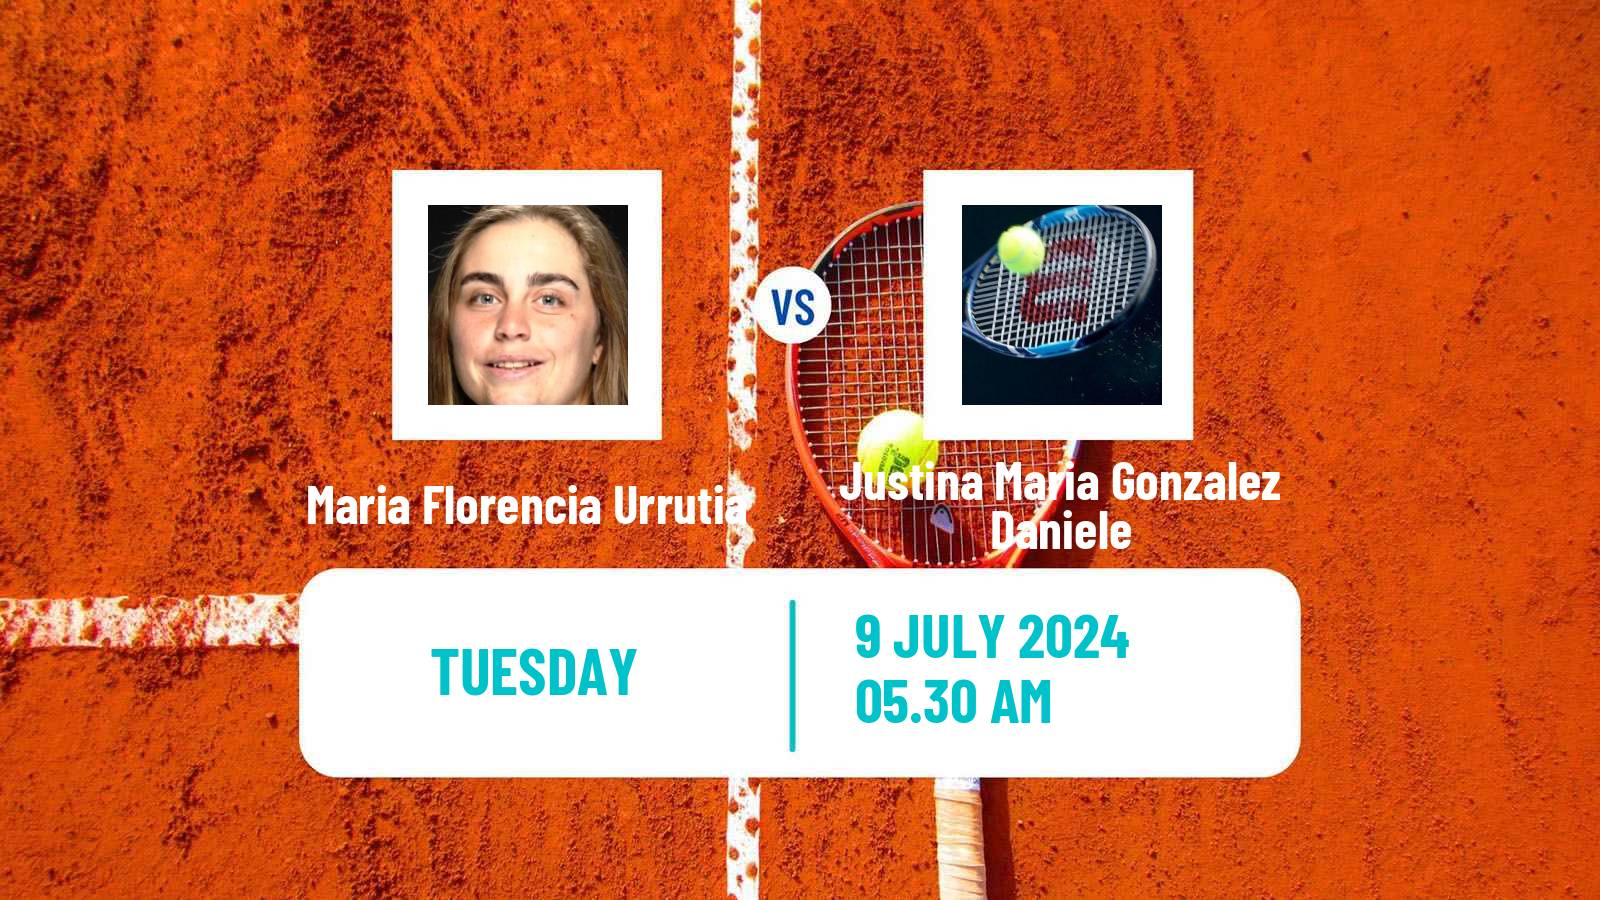 Tennis ITF W15 Lujan Women Maria Florencia Urrutia - Justina Maria Gonzalez Daniele